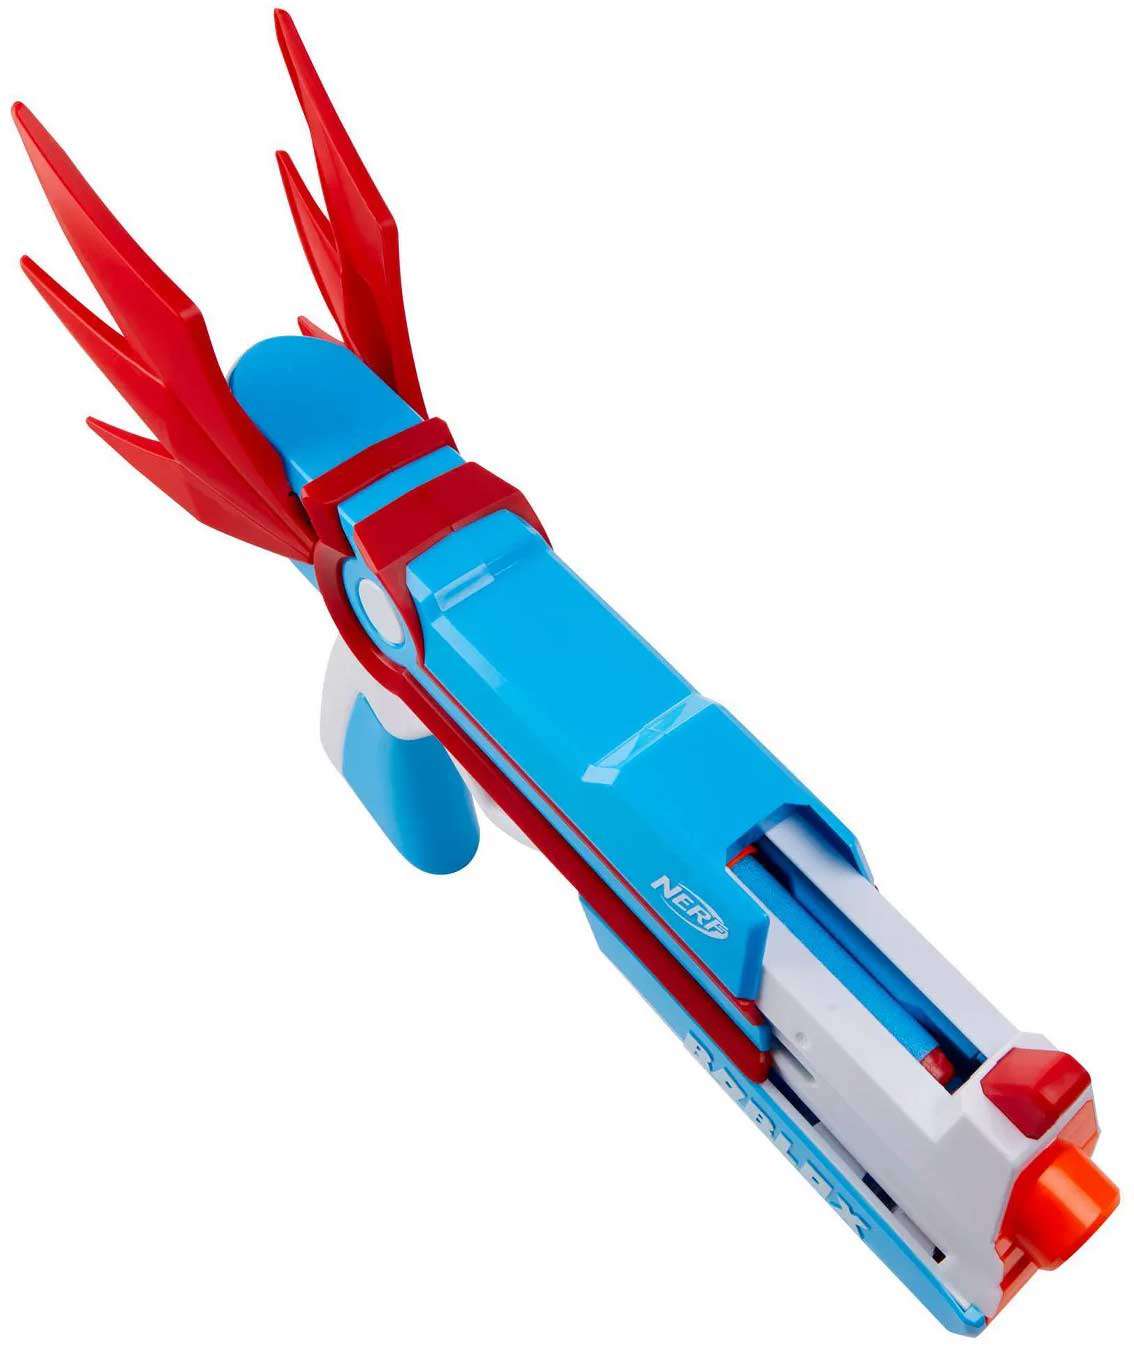 Nerf Roblox MM2 Dartbringer Dart Blaster Toy 